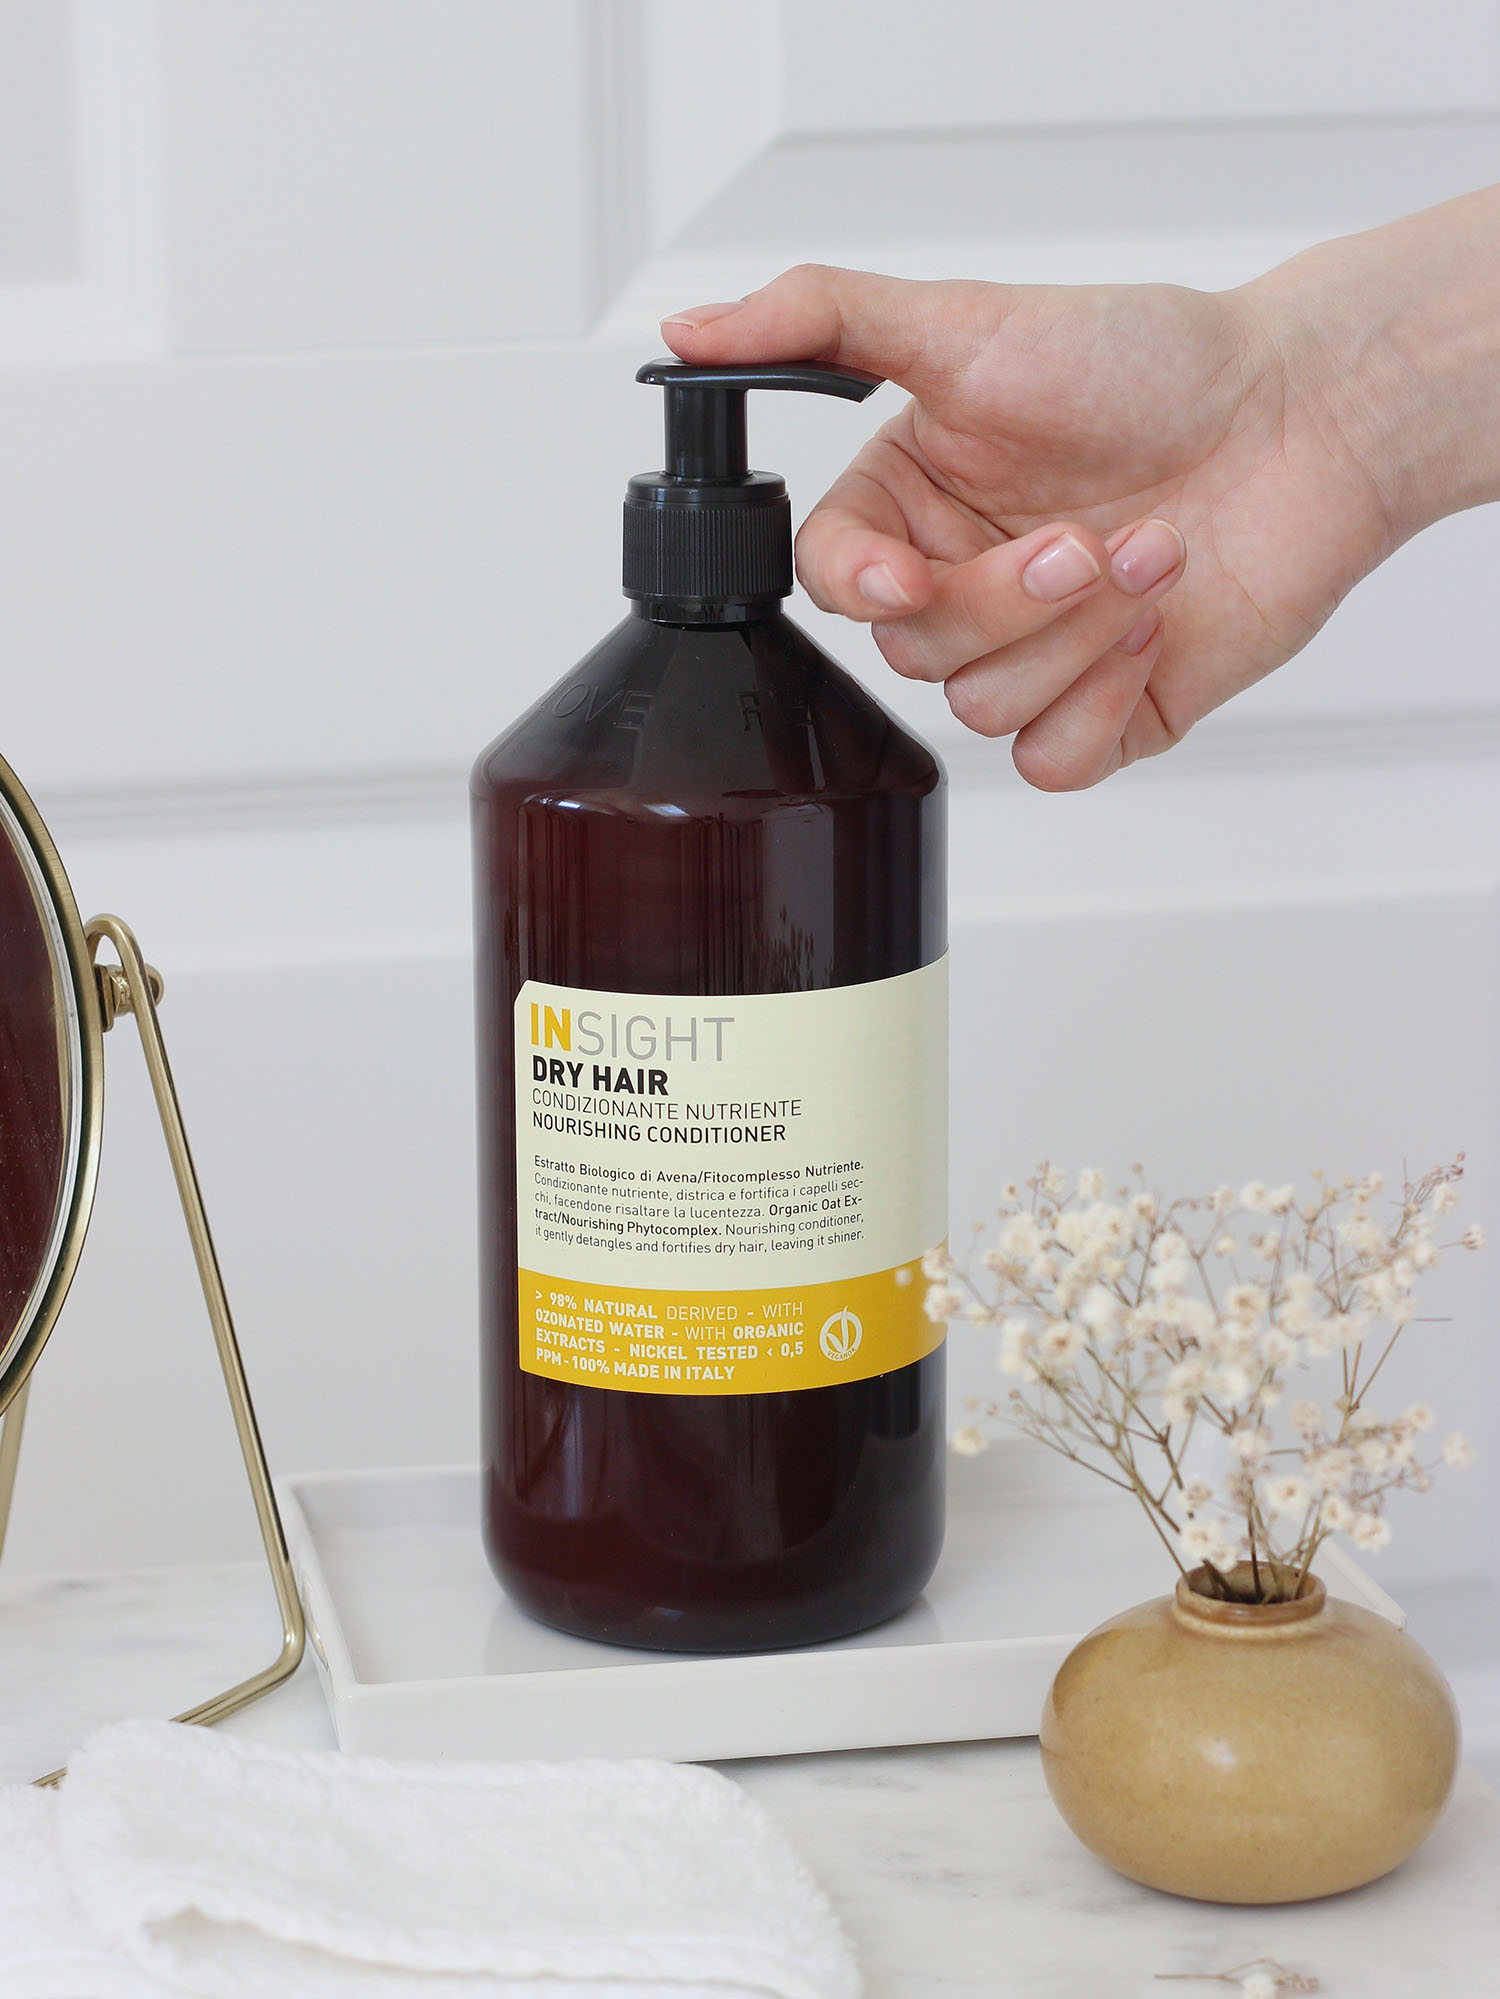 wygładzajaco-wzmacniający szampon biolaven recenzja